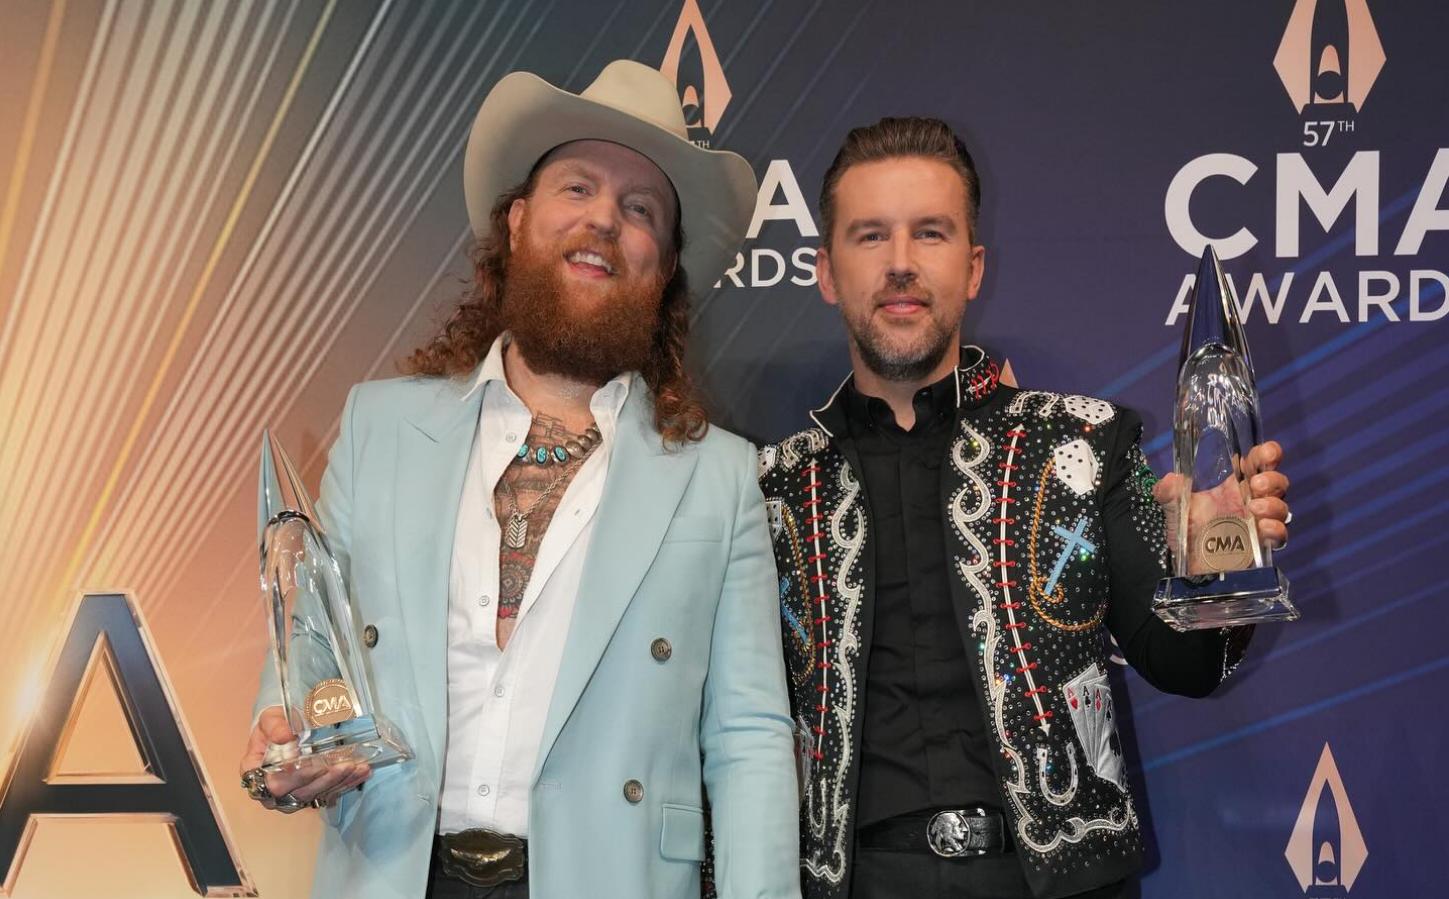 Gay Country artist & sibling win Vocal Duo at 57th CMA awards